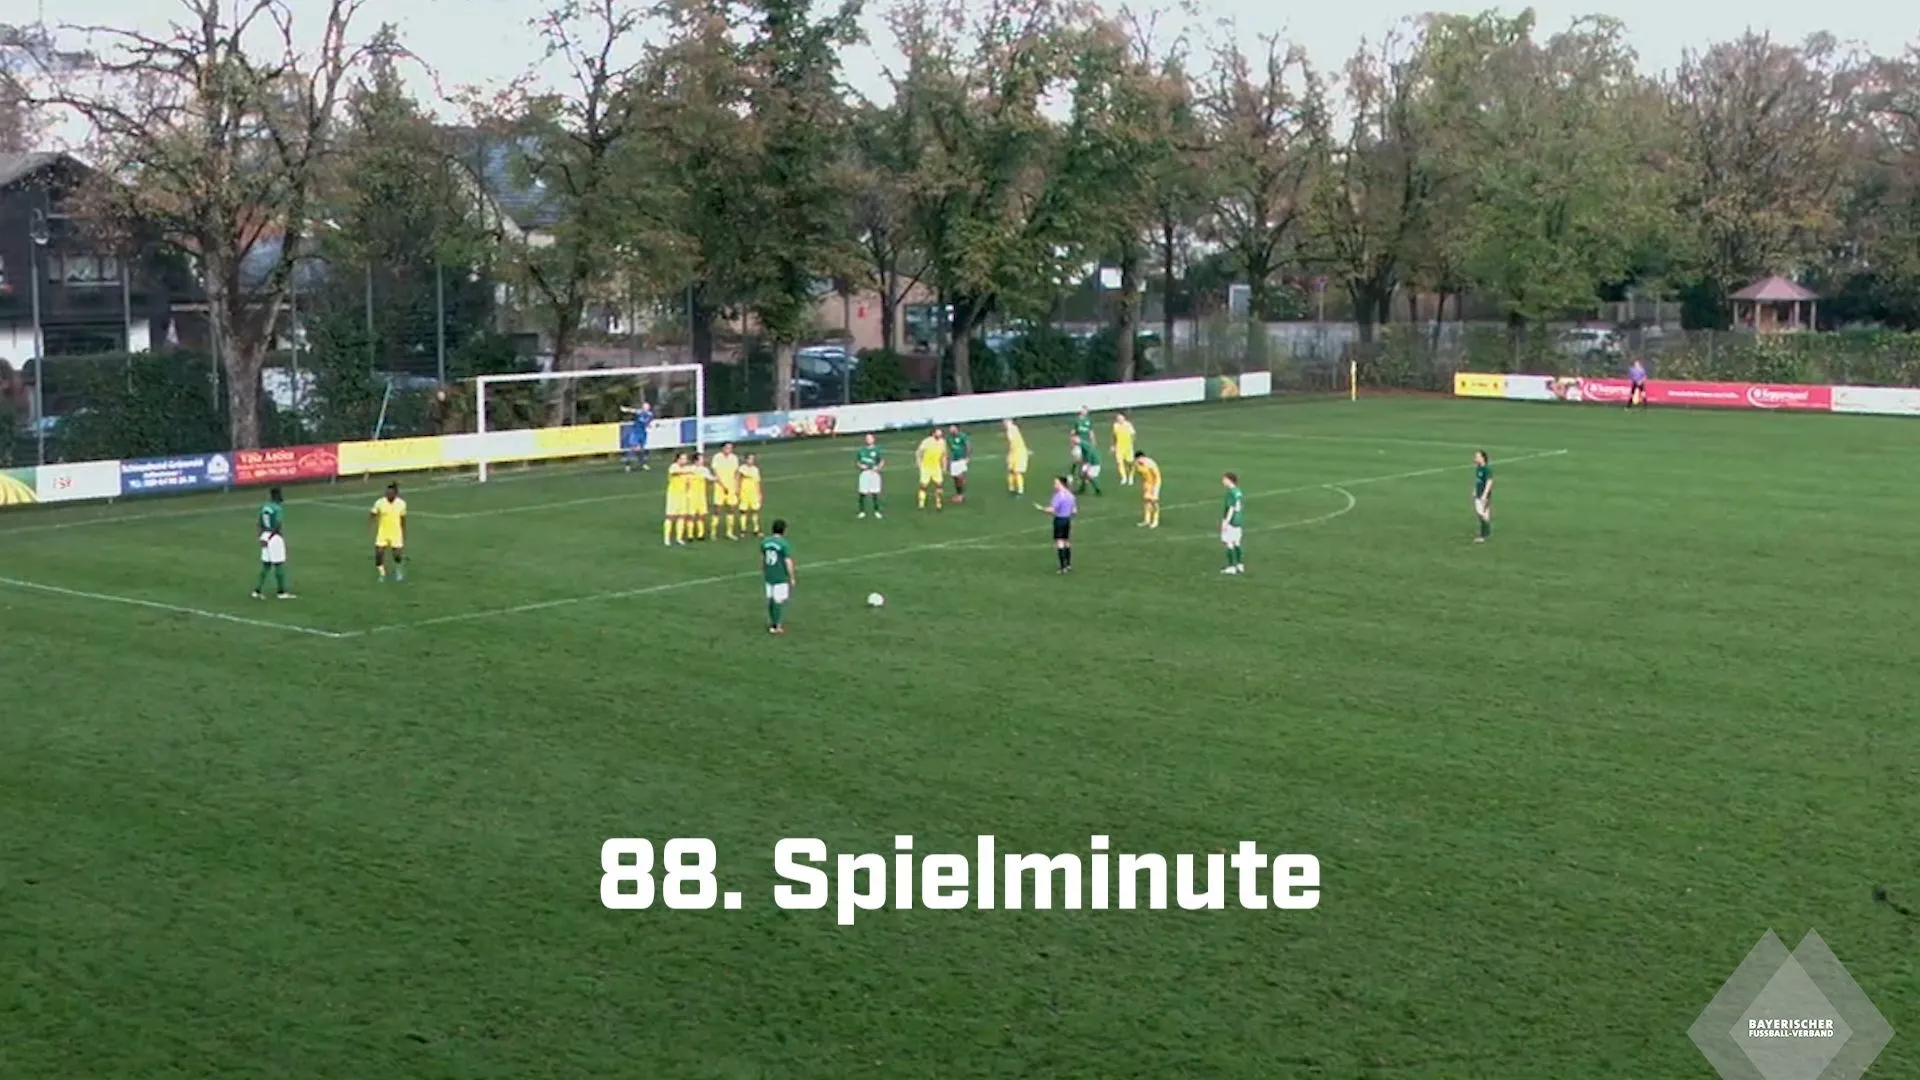 Unos minutos finales de locura: La pateadora de la Landesliga anota dos tiros libres idénticos en tres minutos